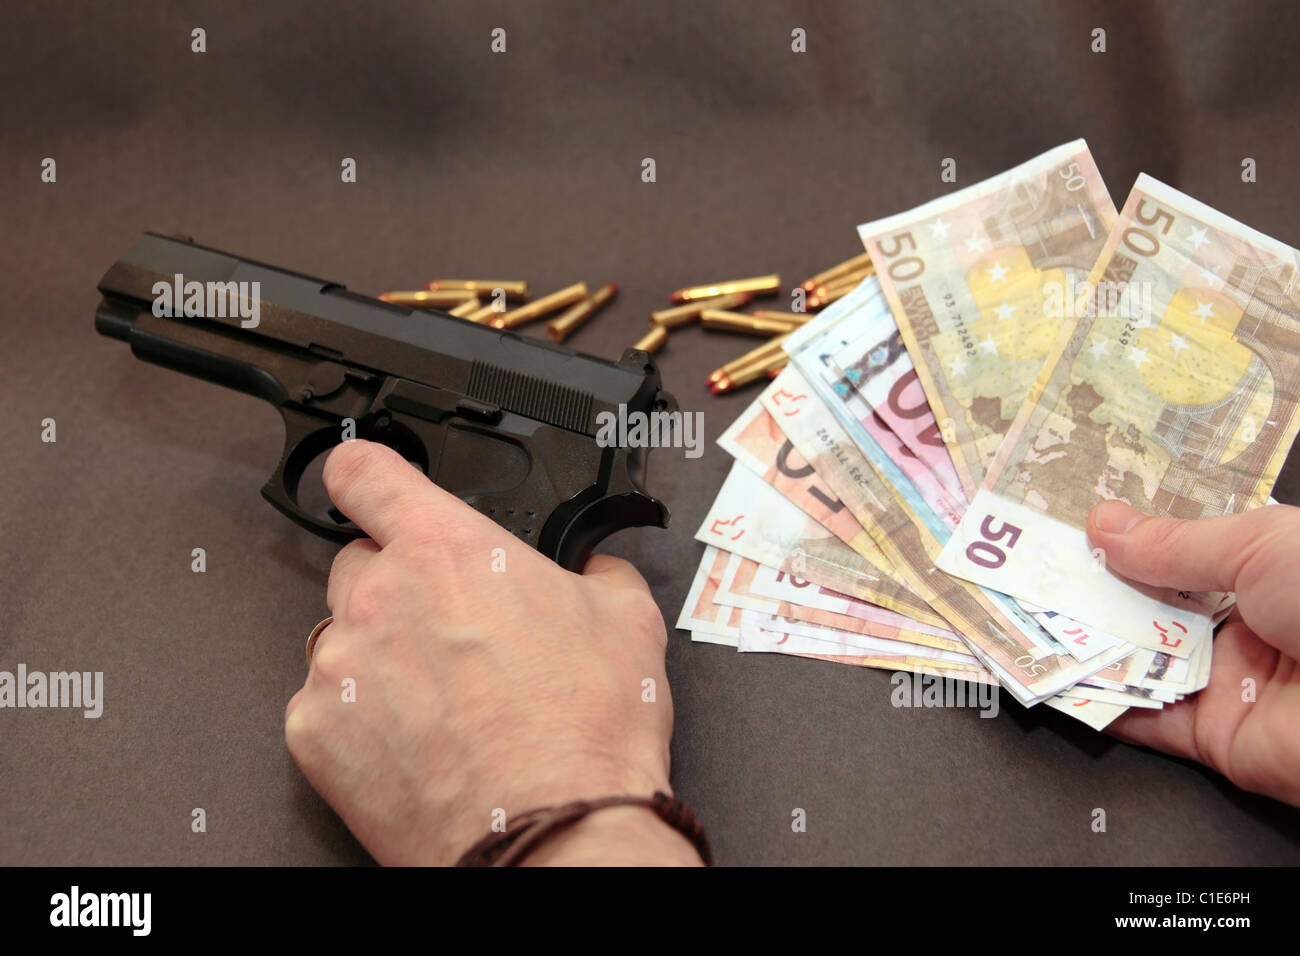 Konzept der ein Medikament Deal oder Pistole mieten hinunter vor einem dunklen Hintergrund Stockfoto